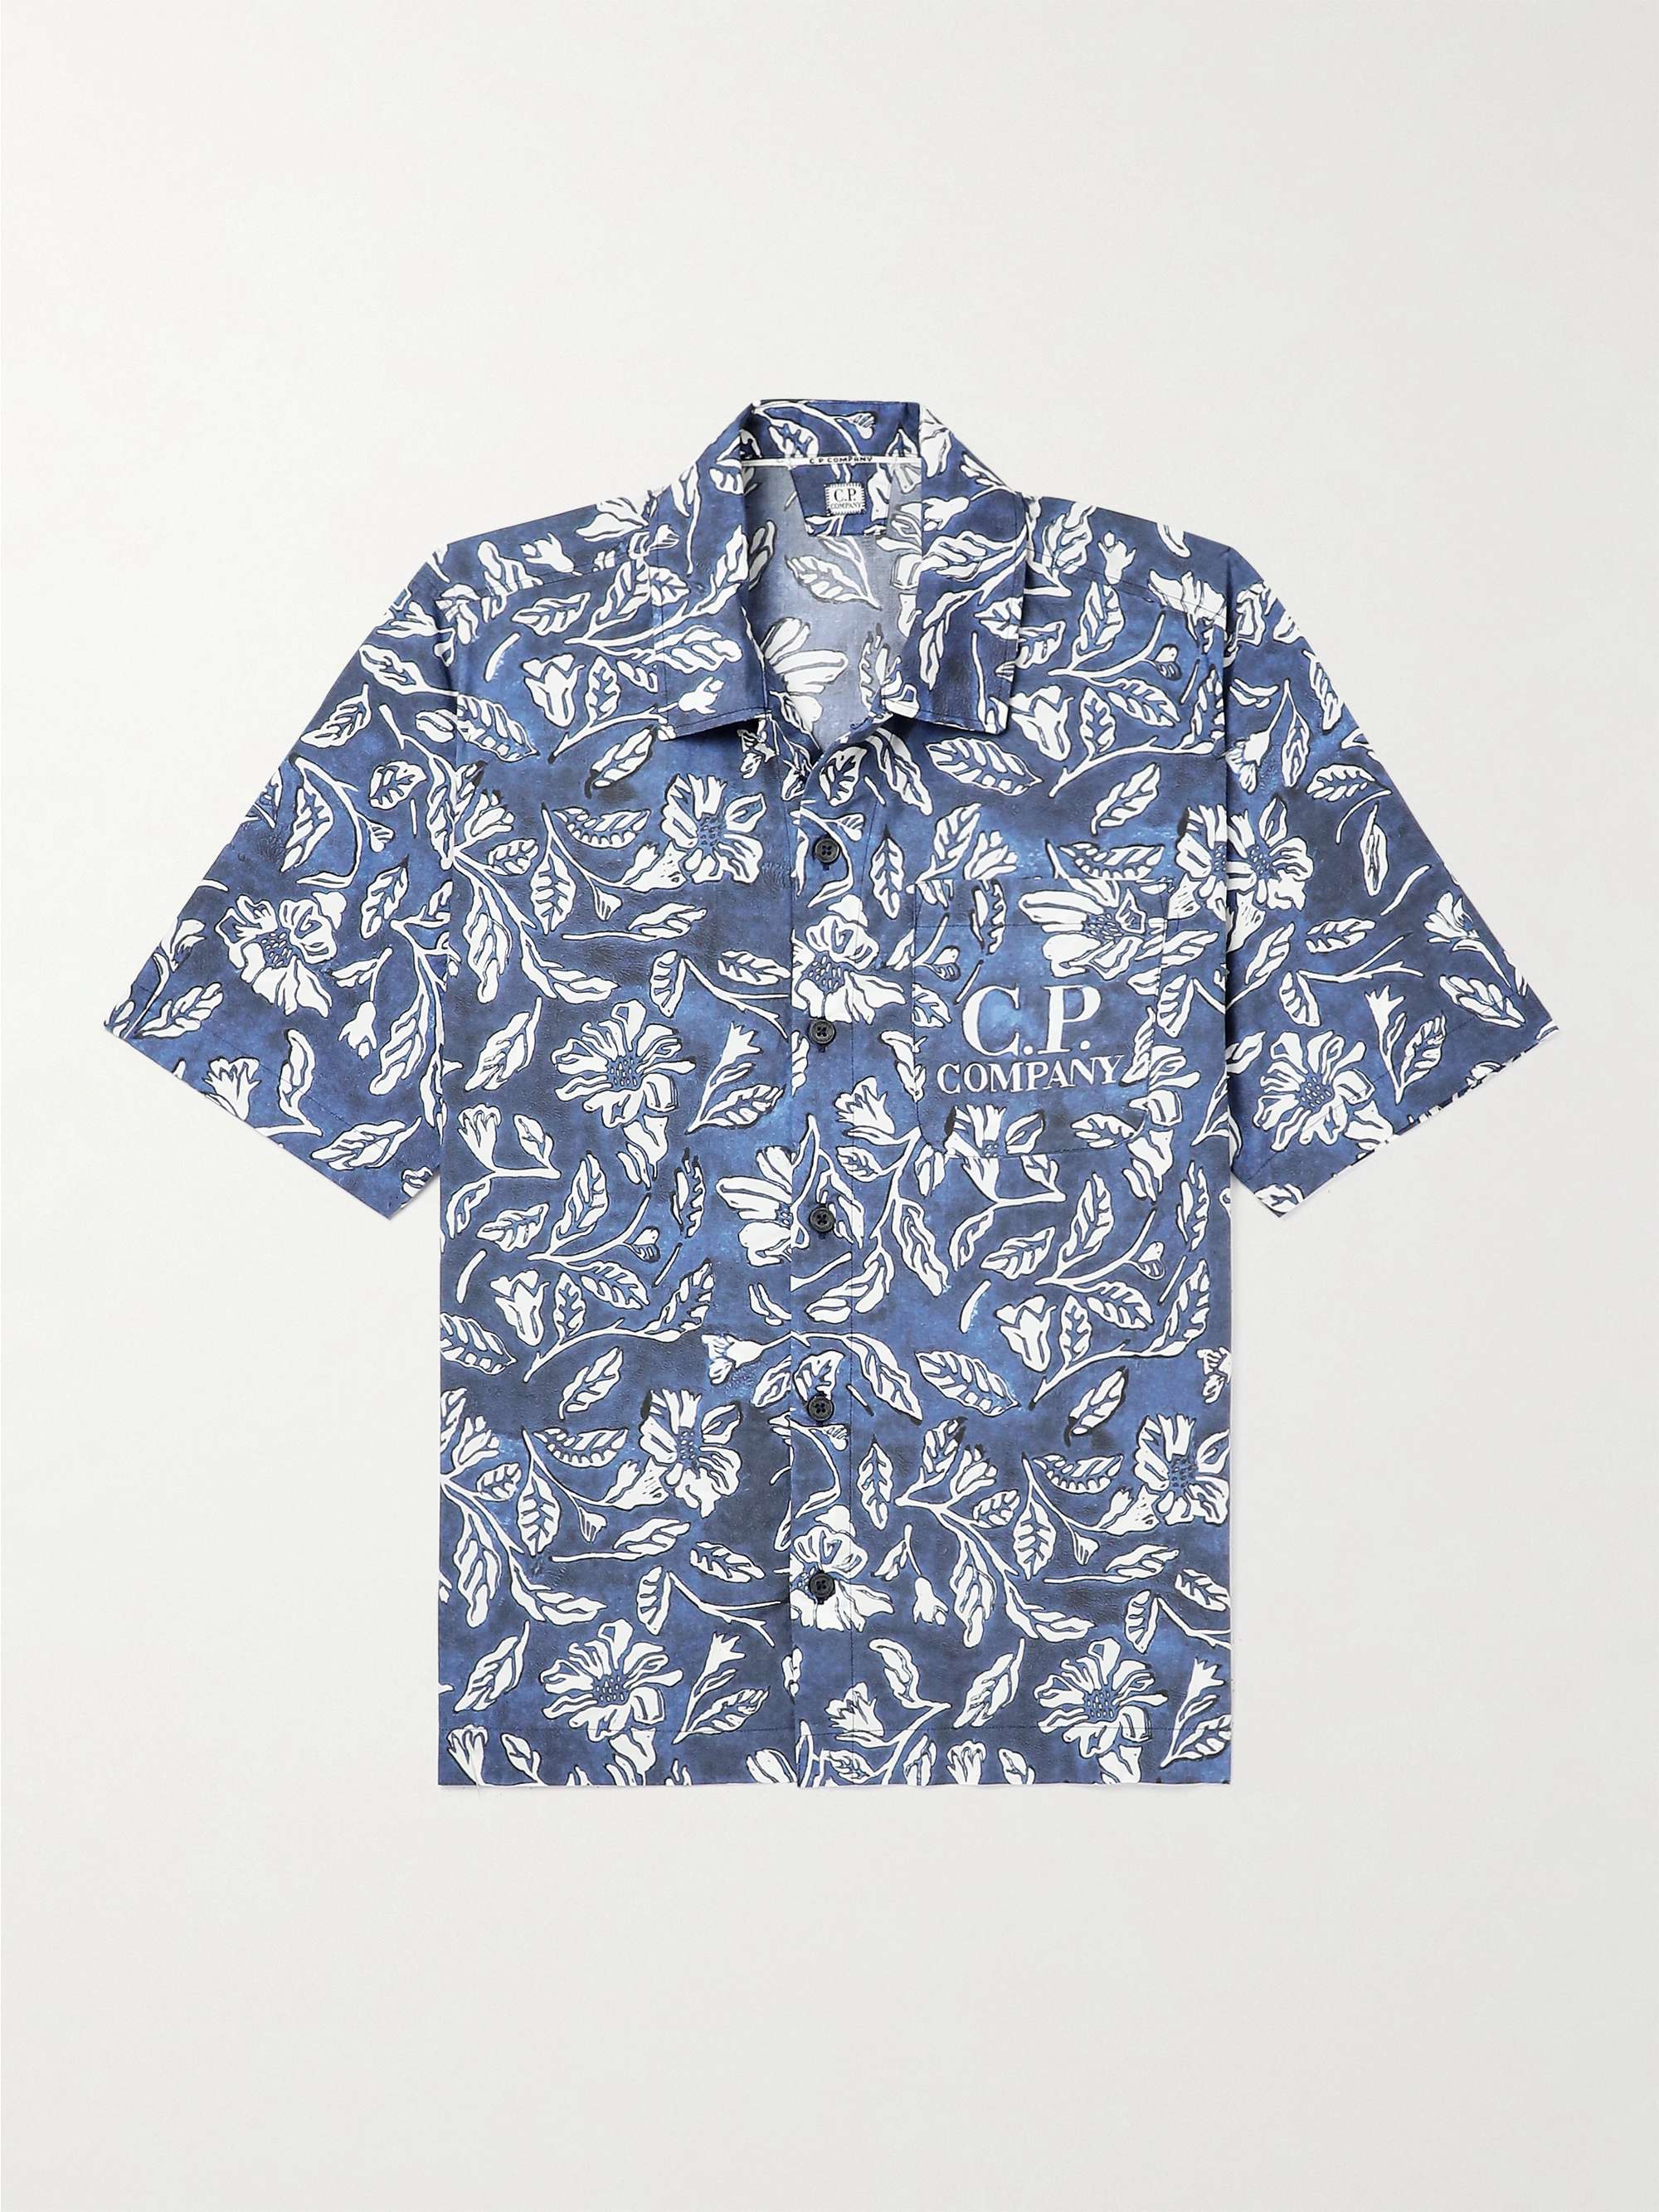 C.P. COMPANY Floral-Print Cotton Shirt